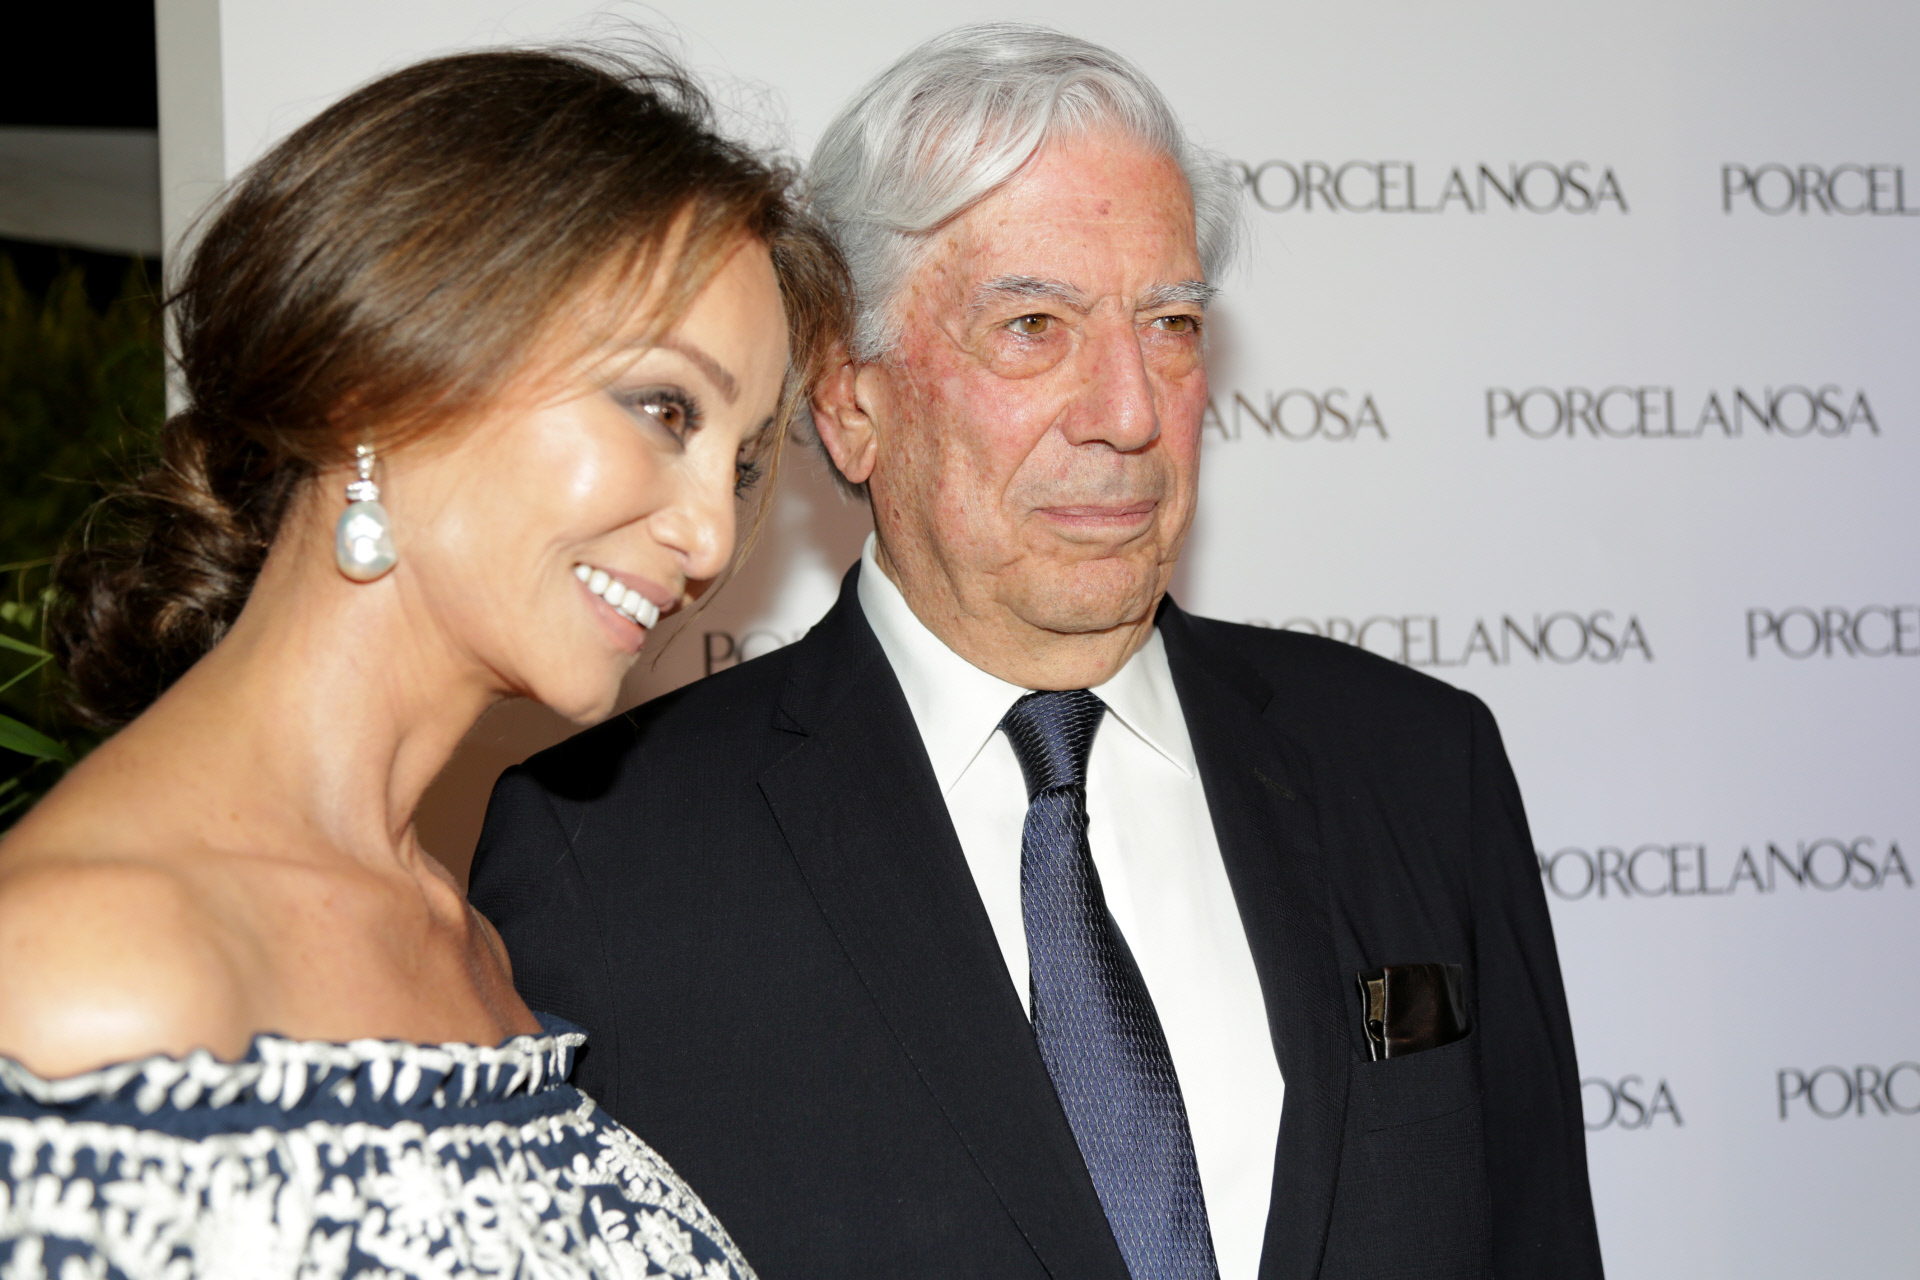 Isabel Preysler y Mario Vargas Llosa en el photocall de Porcelanosa